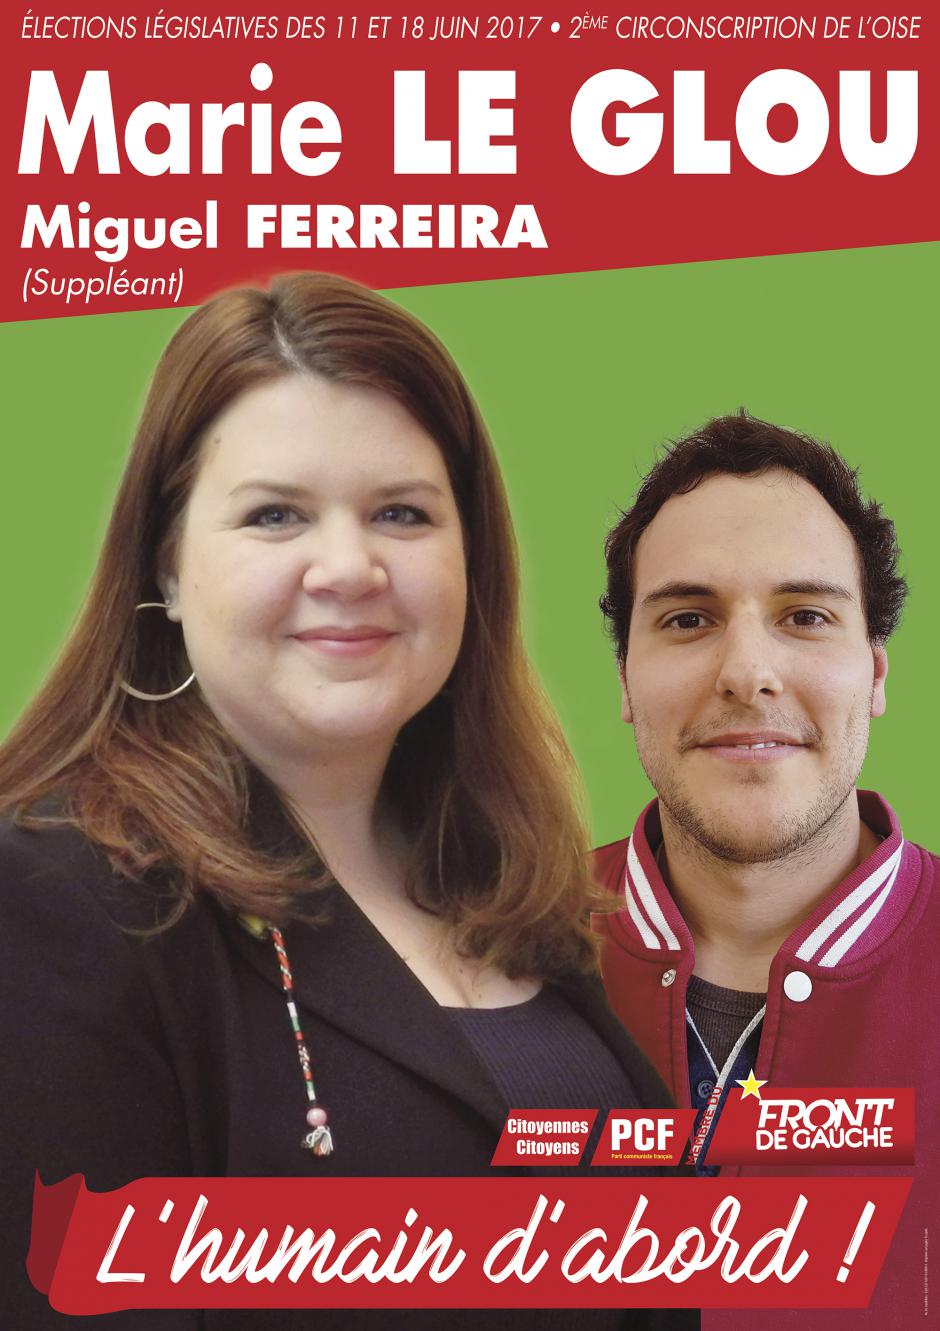 Affiche de campagne de Marie Le Glou et Miguel Ferreira aux Législatives 2017 - 2e circonscription de l'Oise, 17 mai 2017